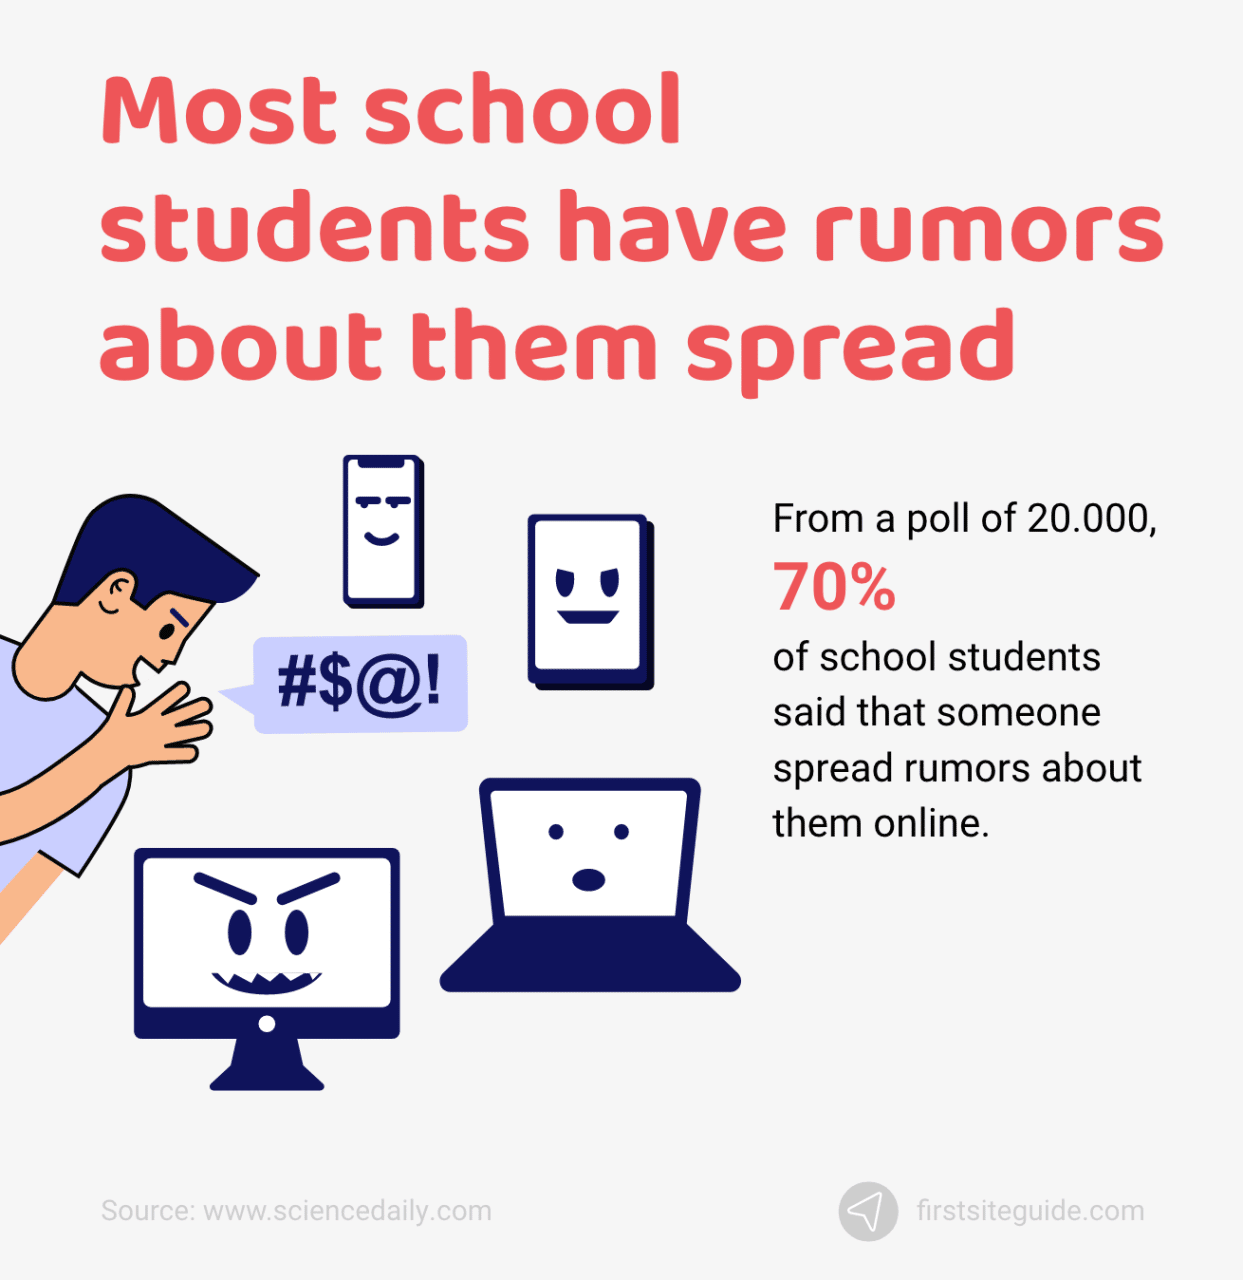 A la mayoría de los alumnos de la escuela se les difunden rumores sobre ellos en Internet